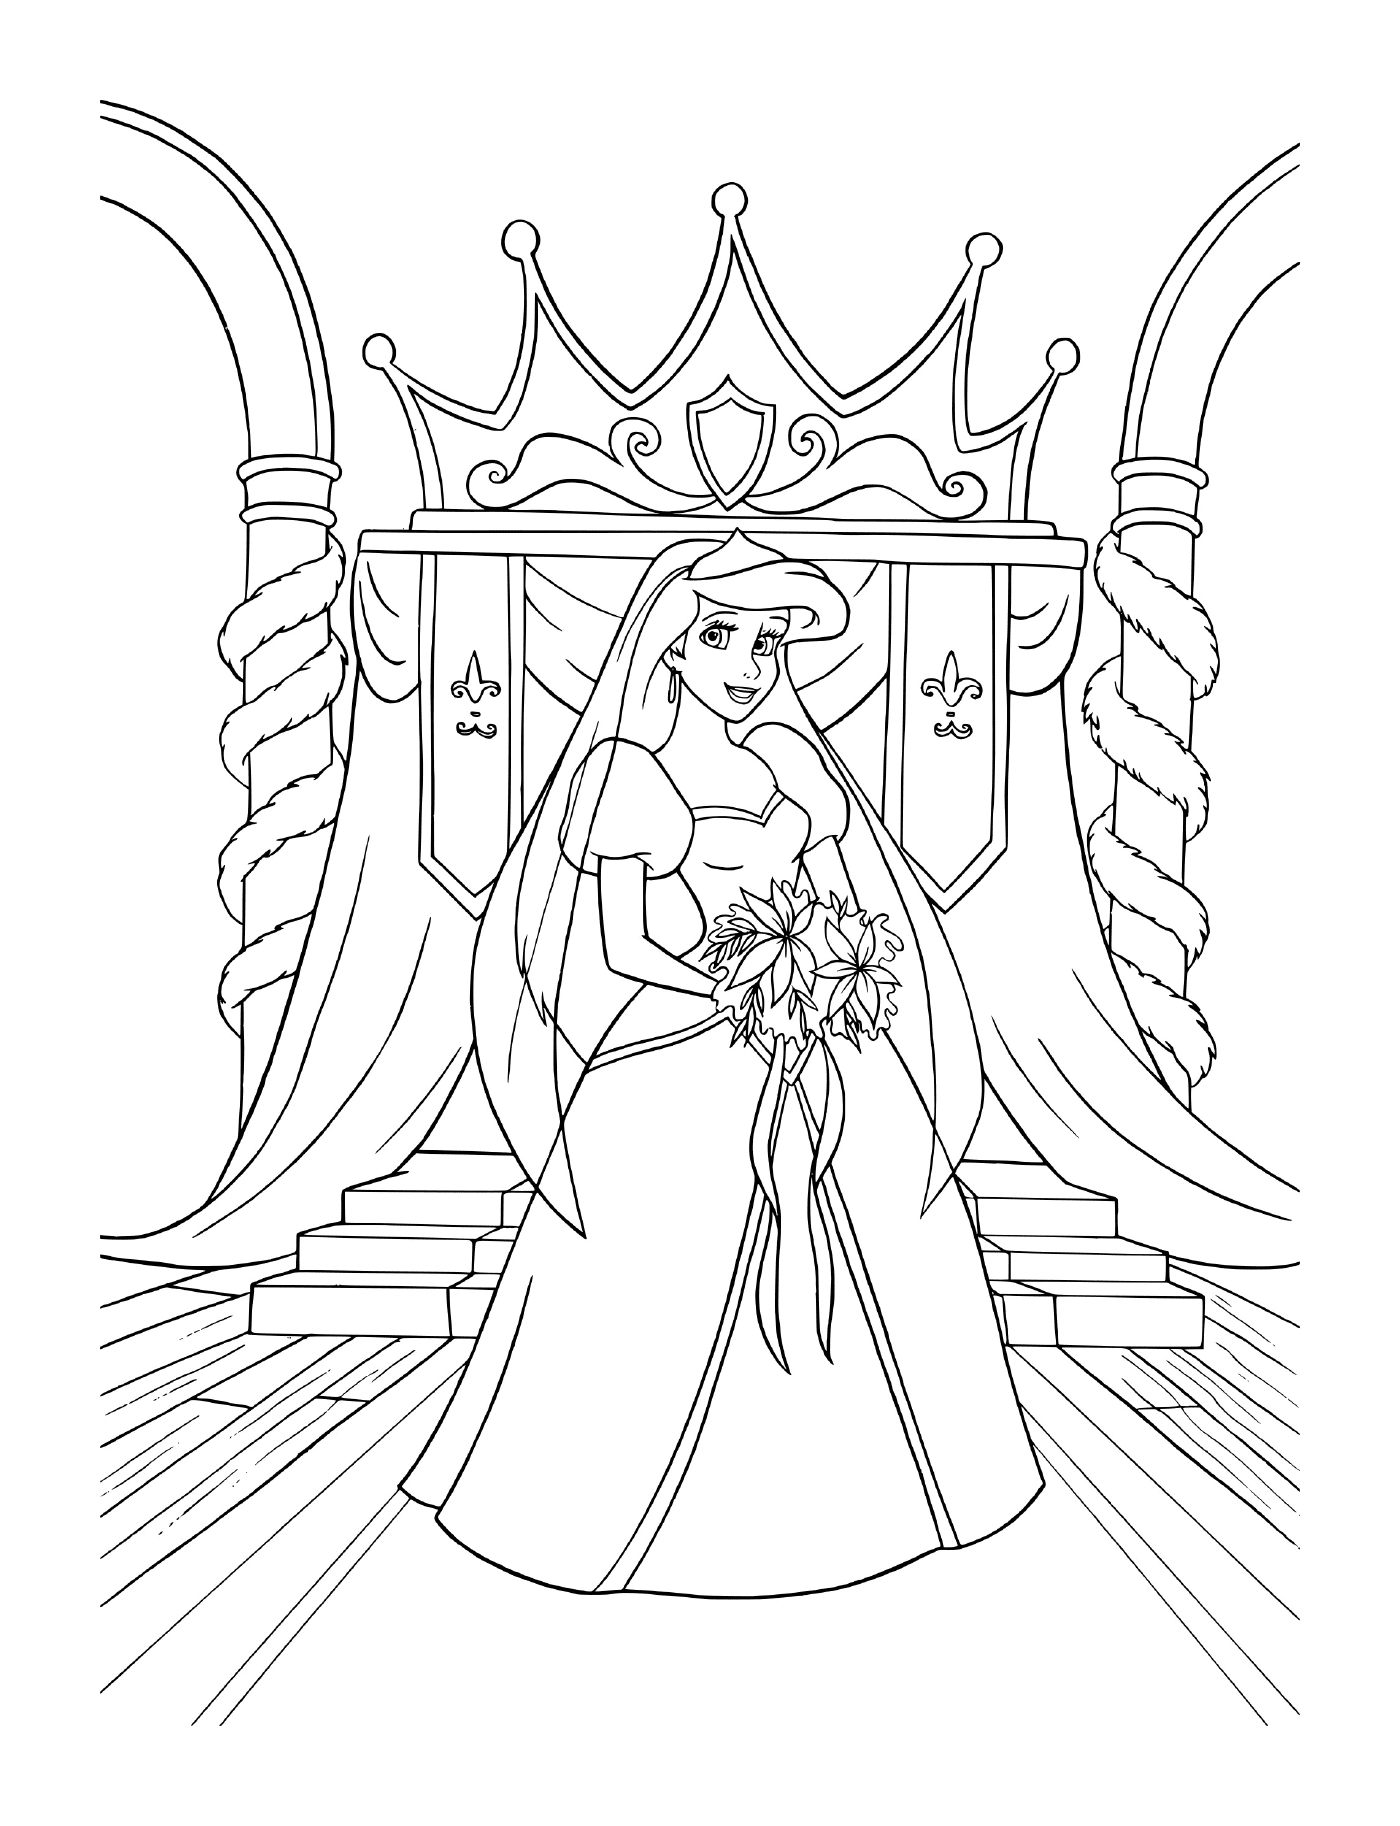  Uma noiva em vestido de noiva sentado em um trono 